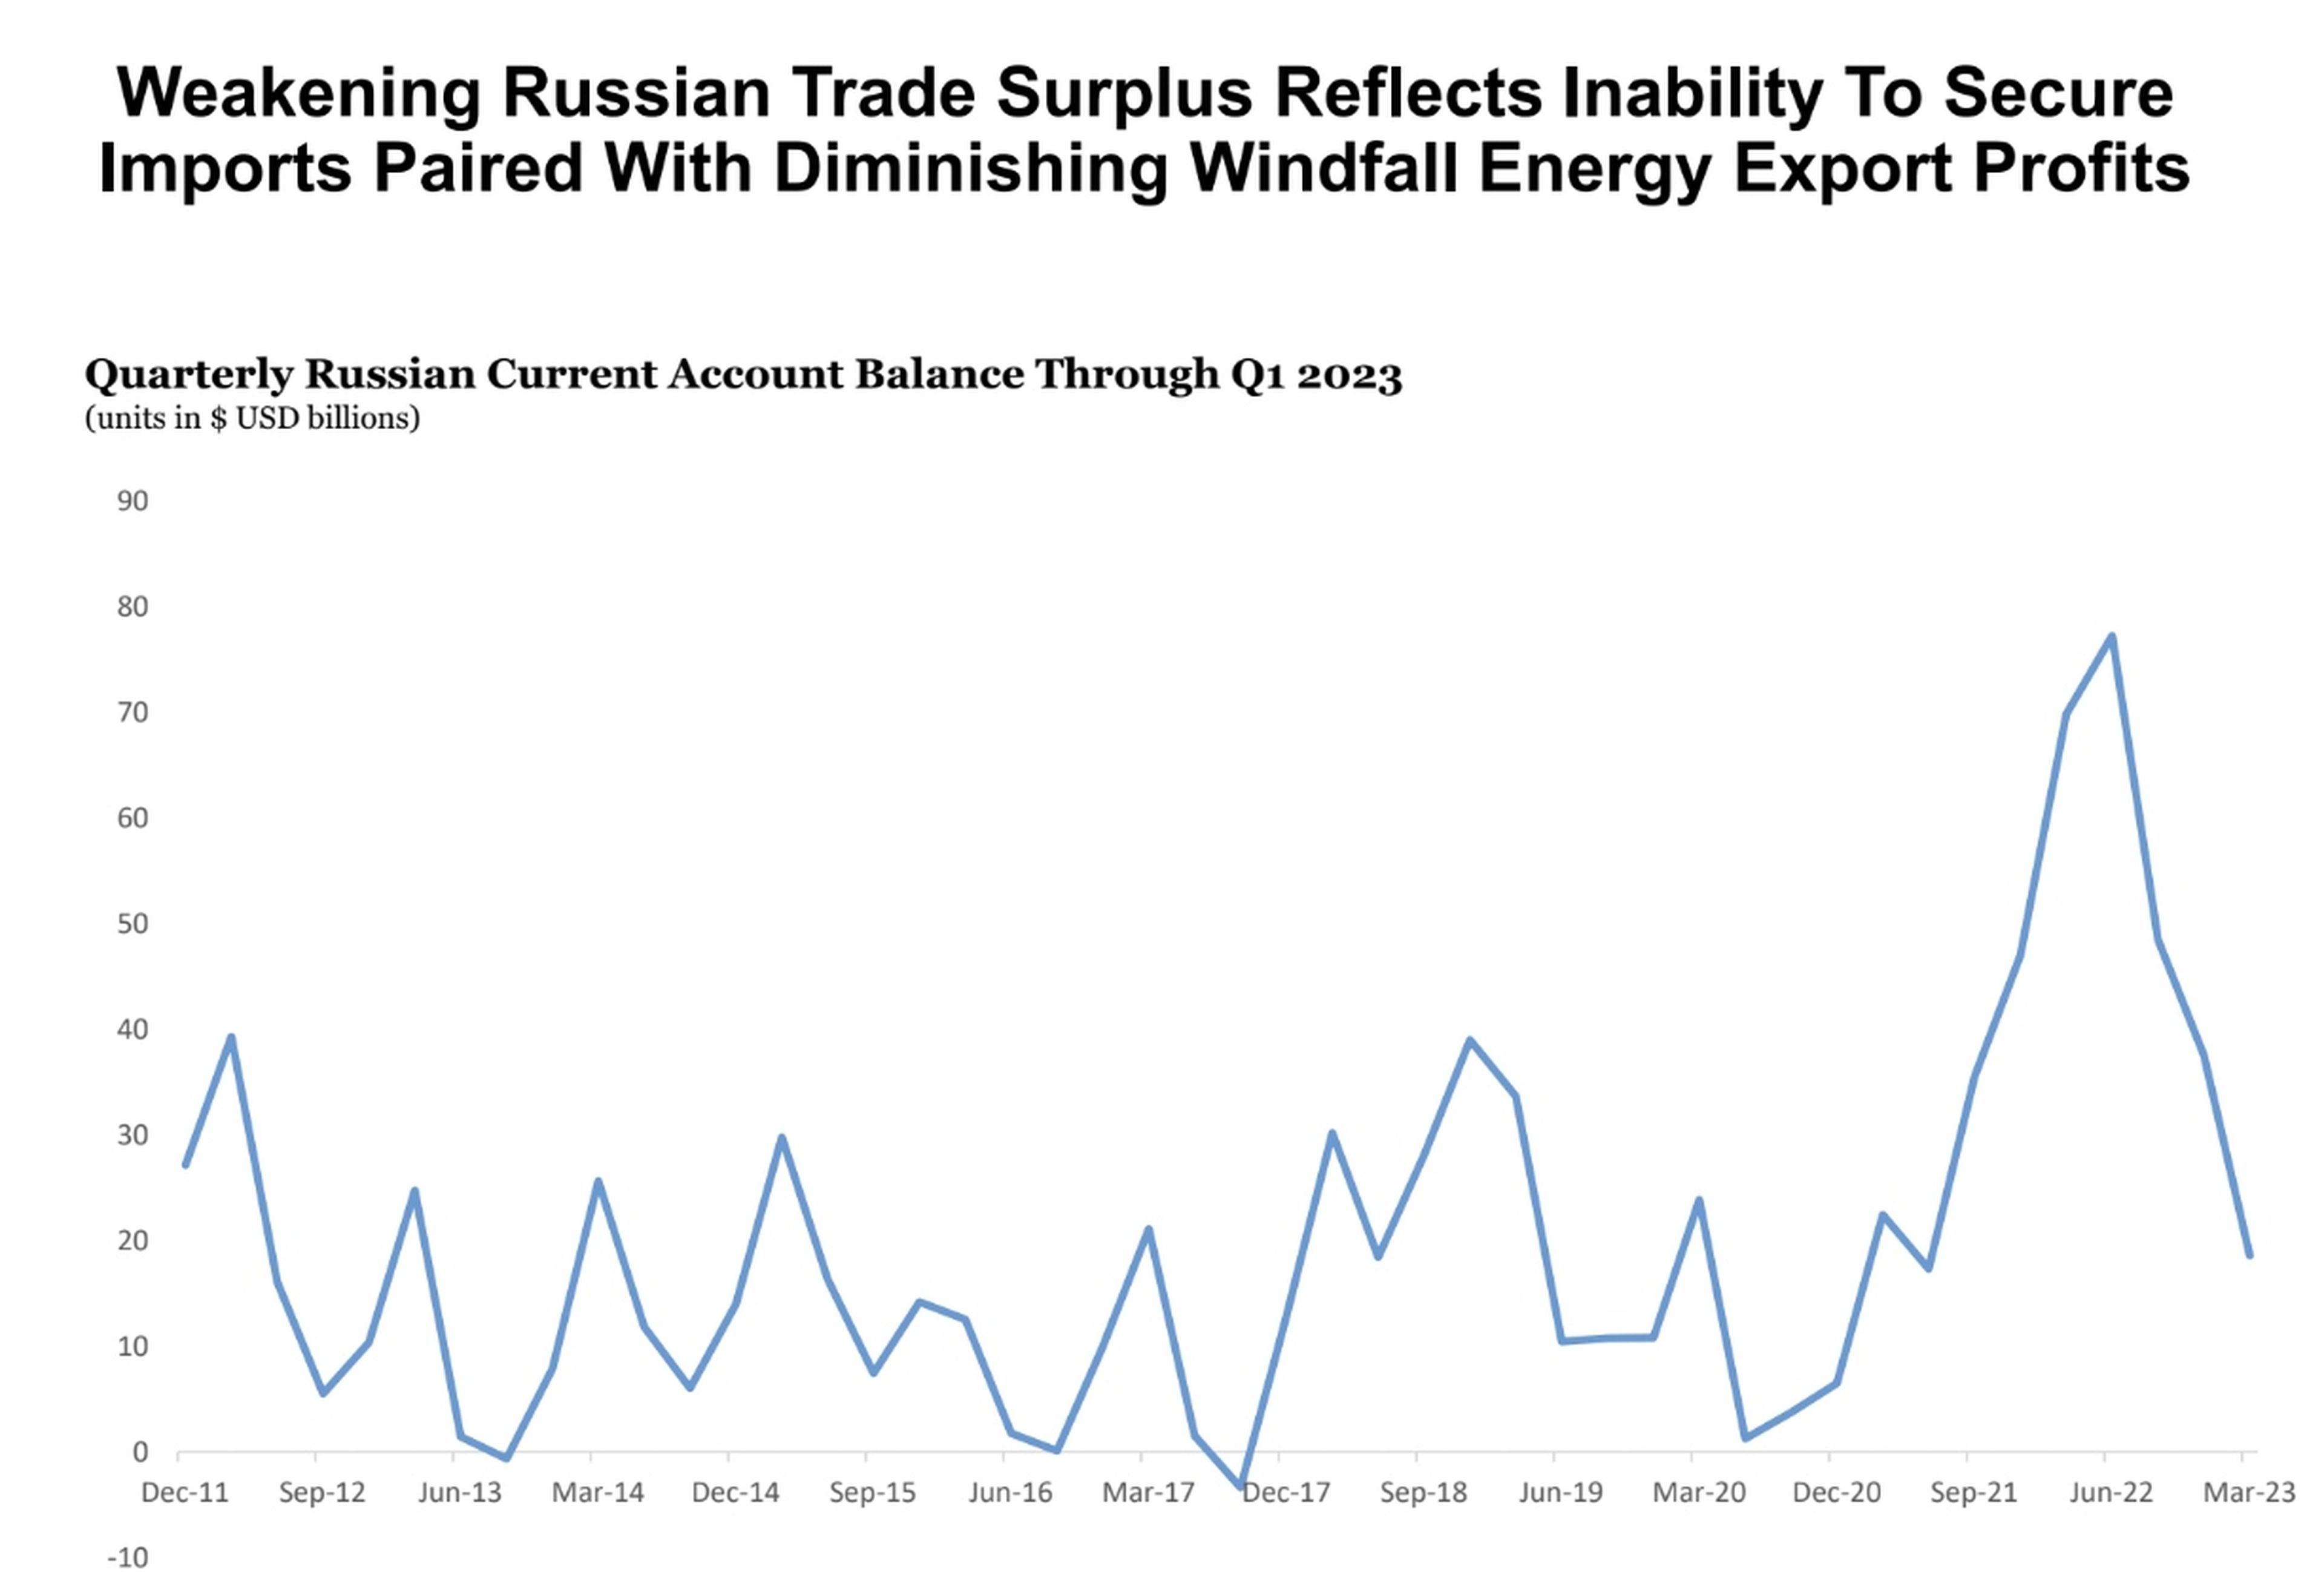 El debilitamiento del superávit comercial ruso ilustra la incapacidad de asegurarse importaciones y la disminución de los beneficios de las exportaciones energéticas.